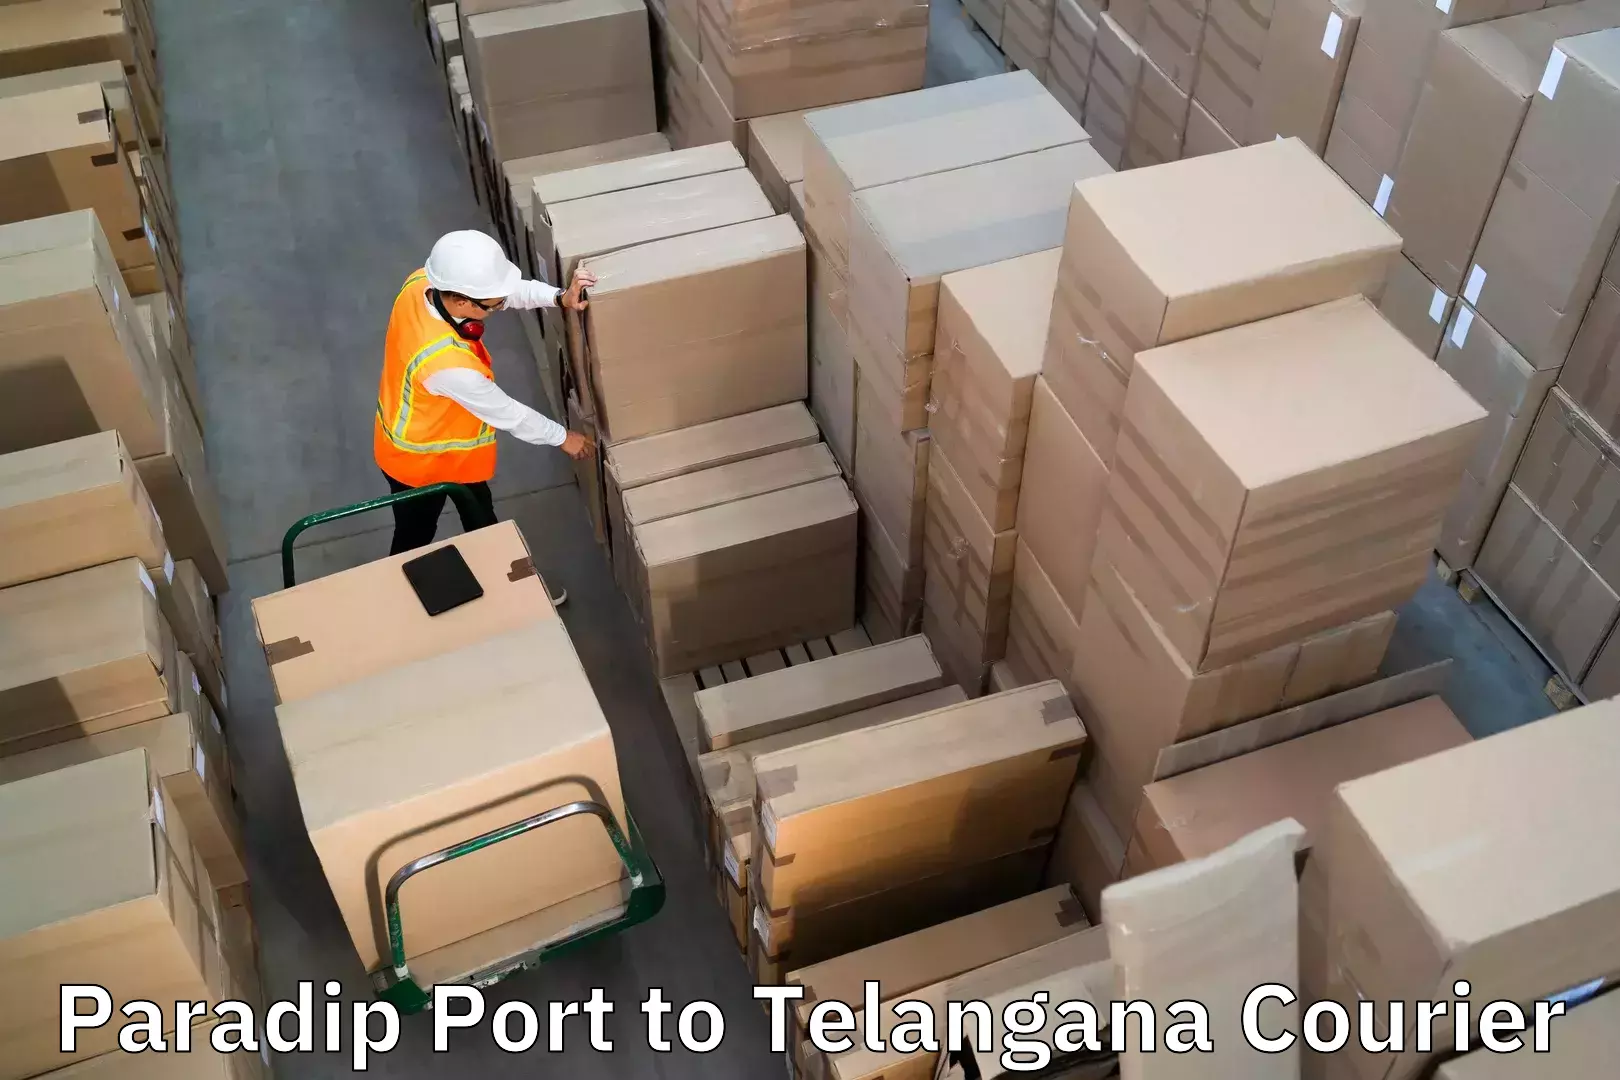 Hassle-free luggage shipping Paradip Port to Thungathurthi